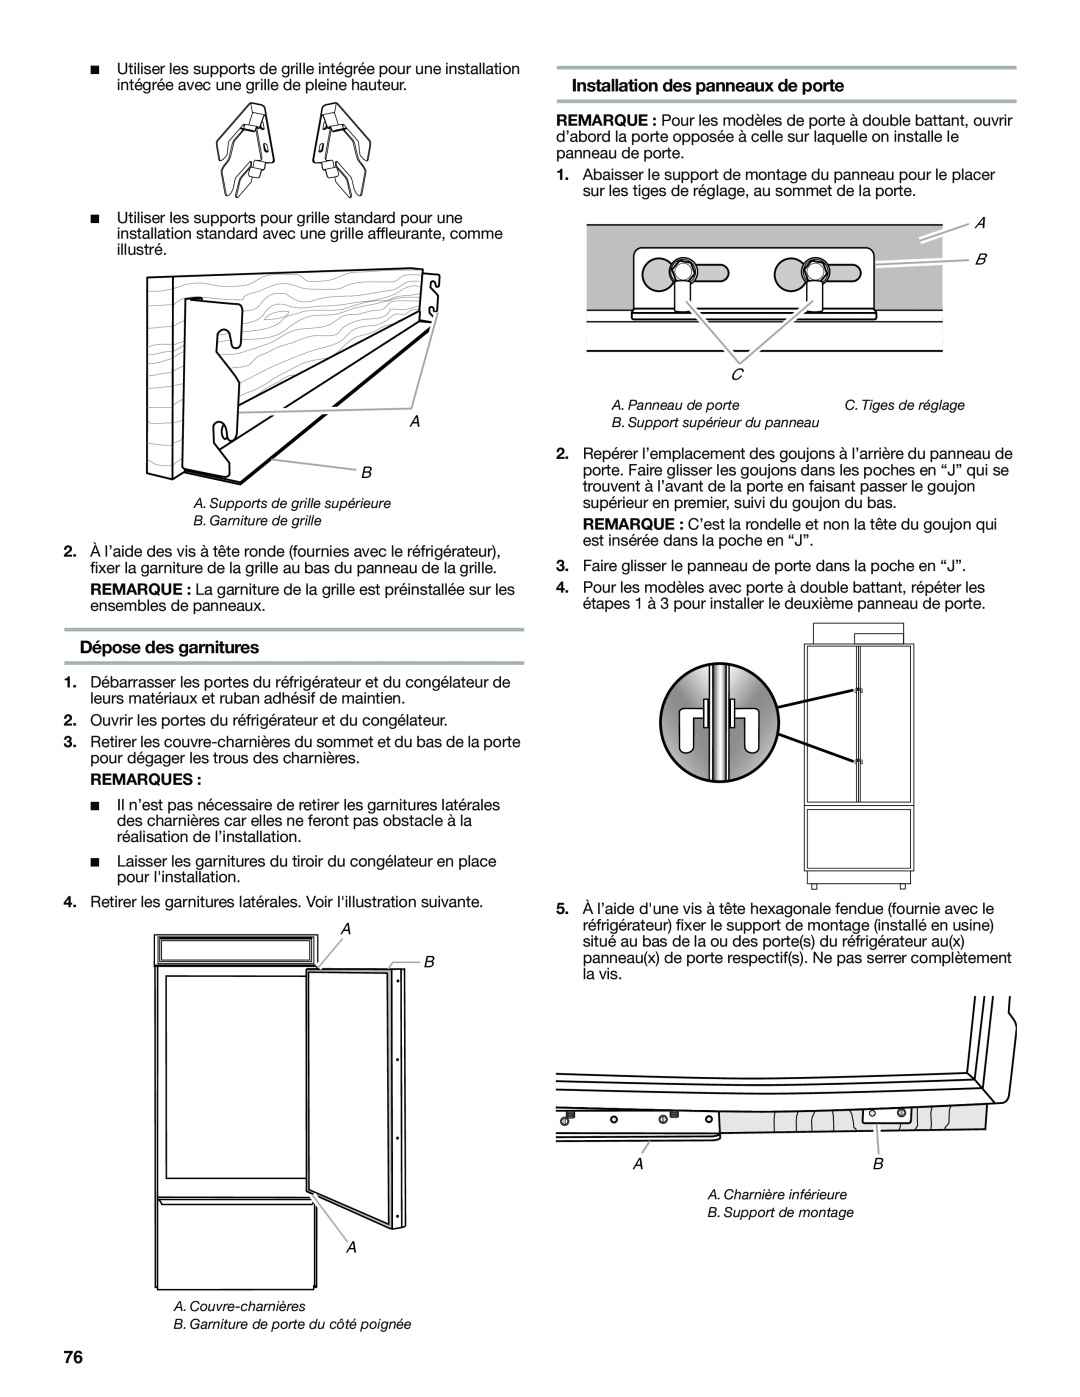 Jenn-Air W10379137A manual Installation des panneaux de porte, Dépose des garnitures, A. Supports de grille supérieure 